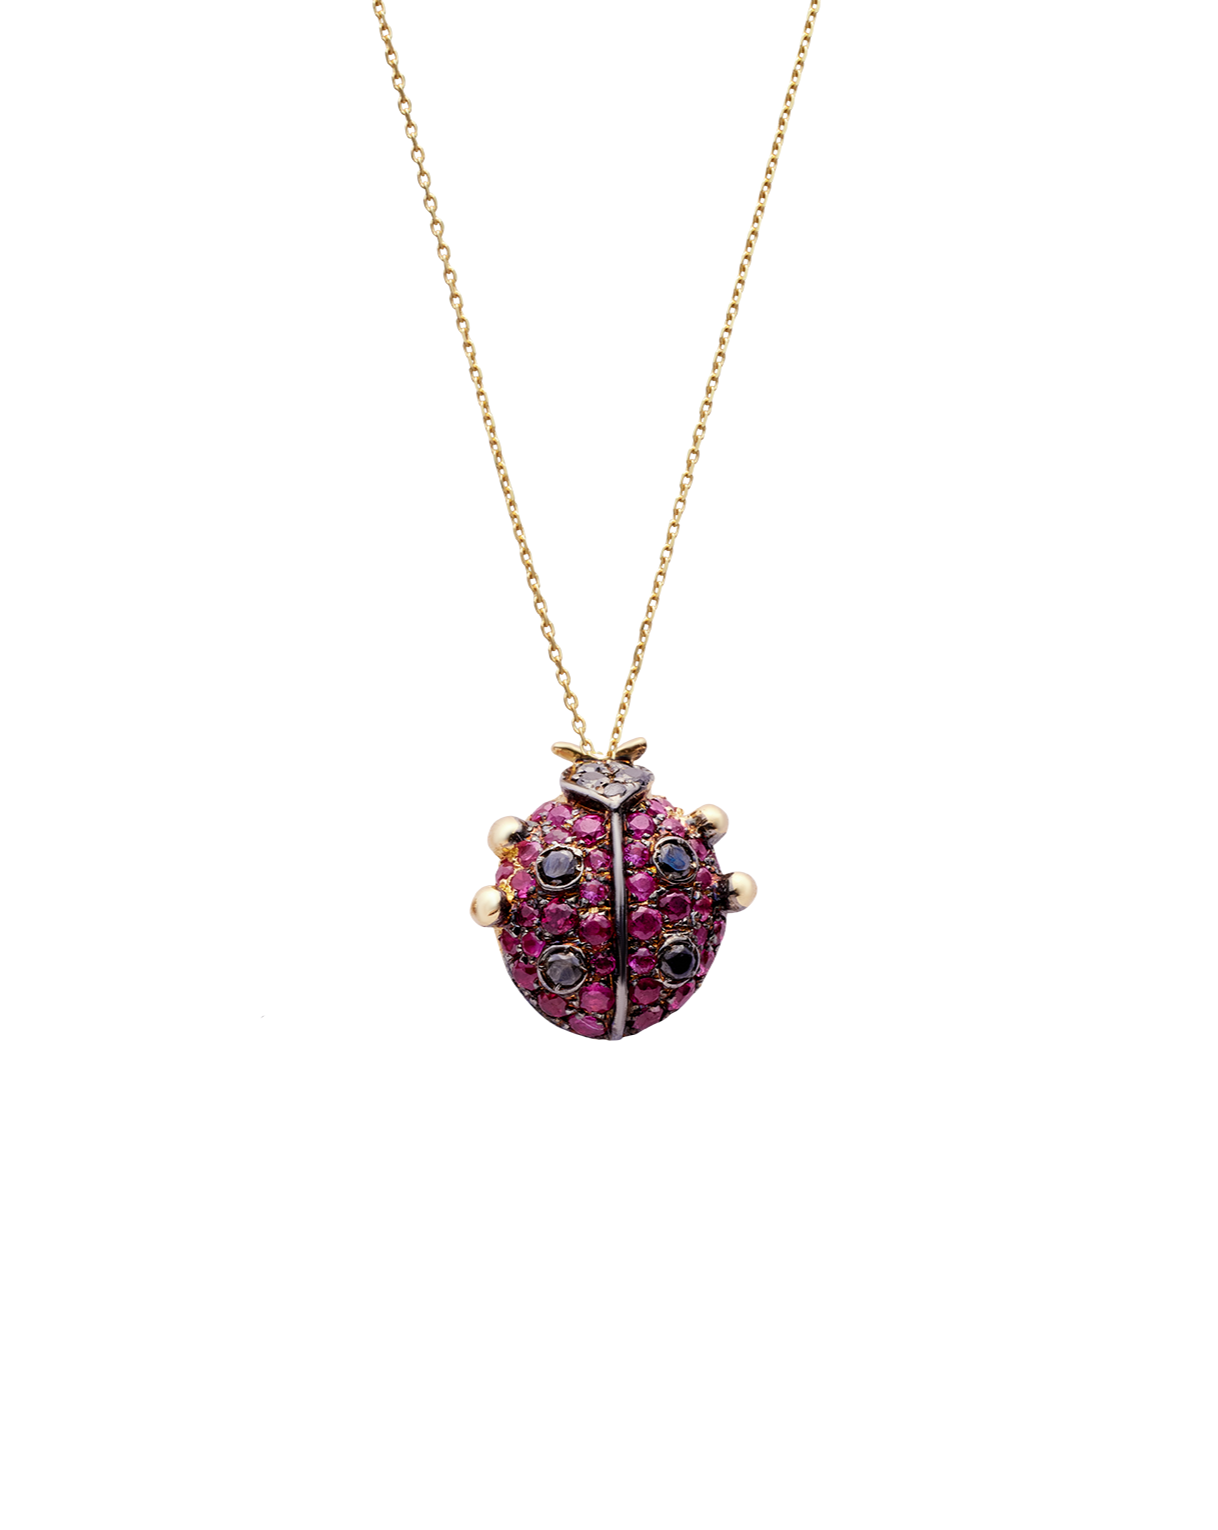 Ladybug Necklace-Jewelry-Nayla Shami-Sorrel Sky Gallery